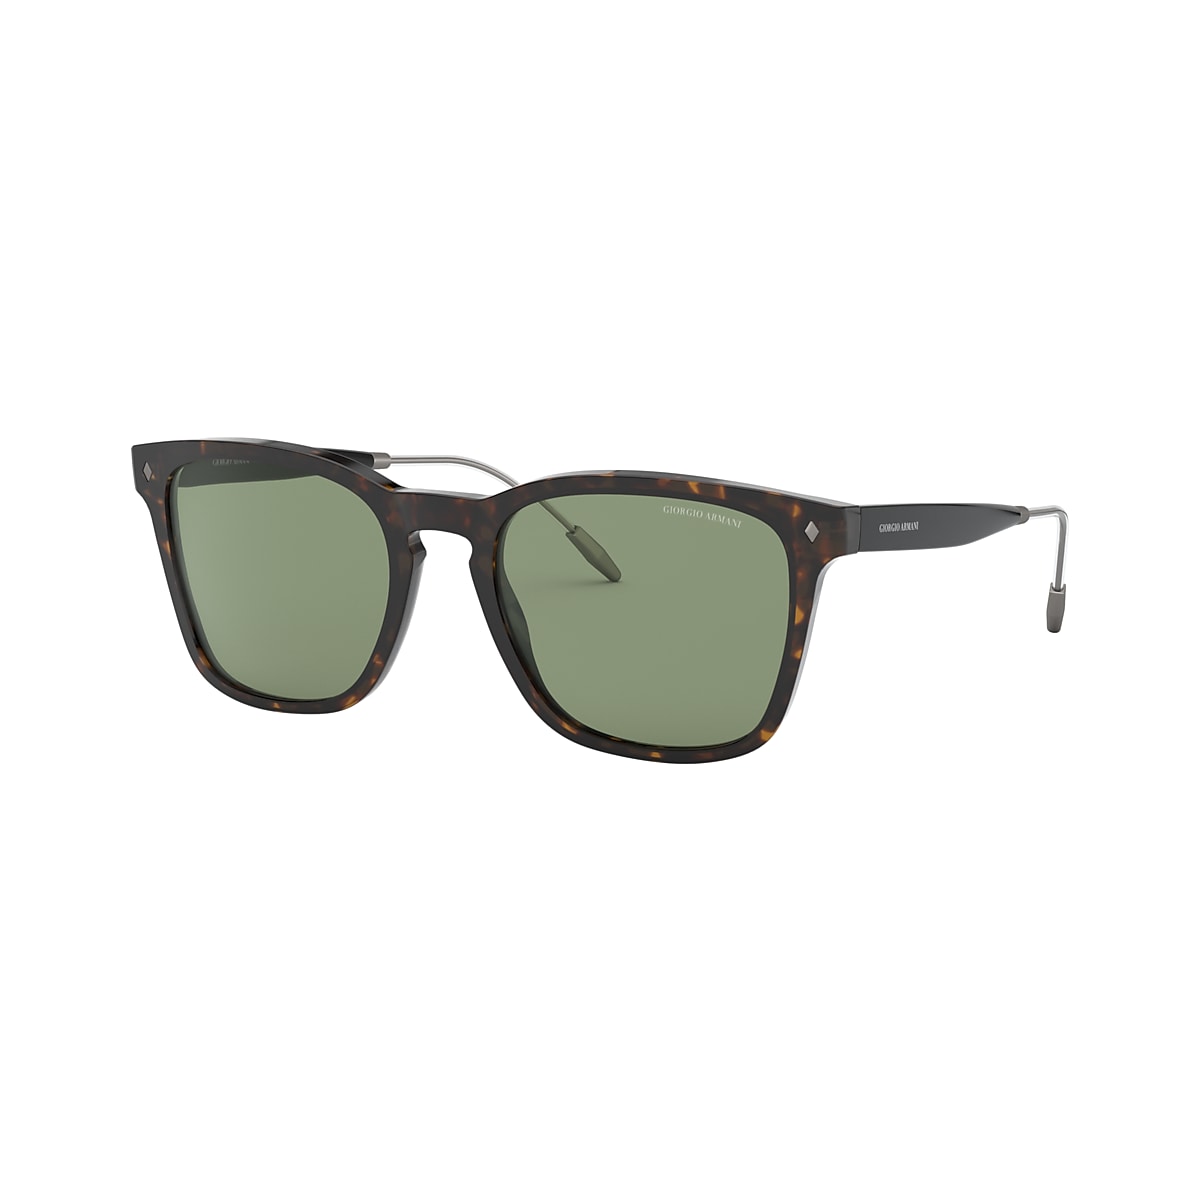 Giorgio Armani AR8120 54 Green & Havana Sunglasses | Sunglass Hut USA